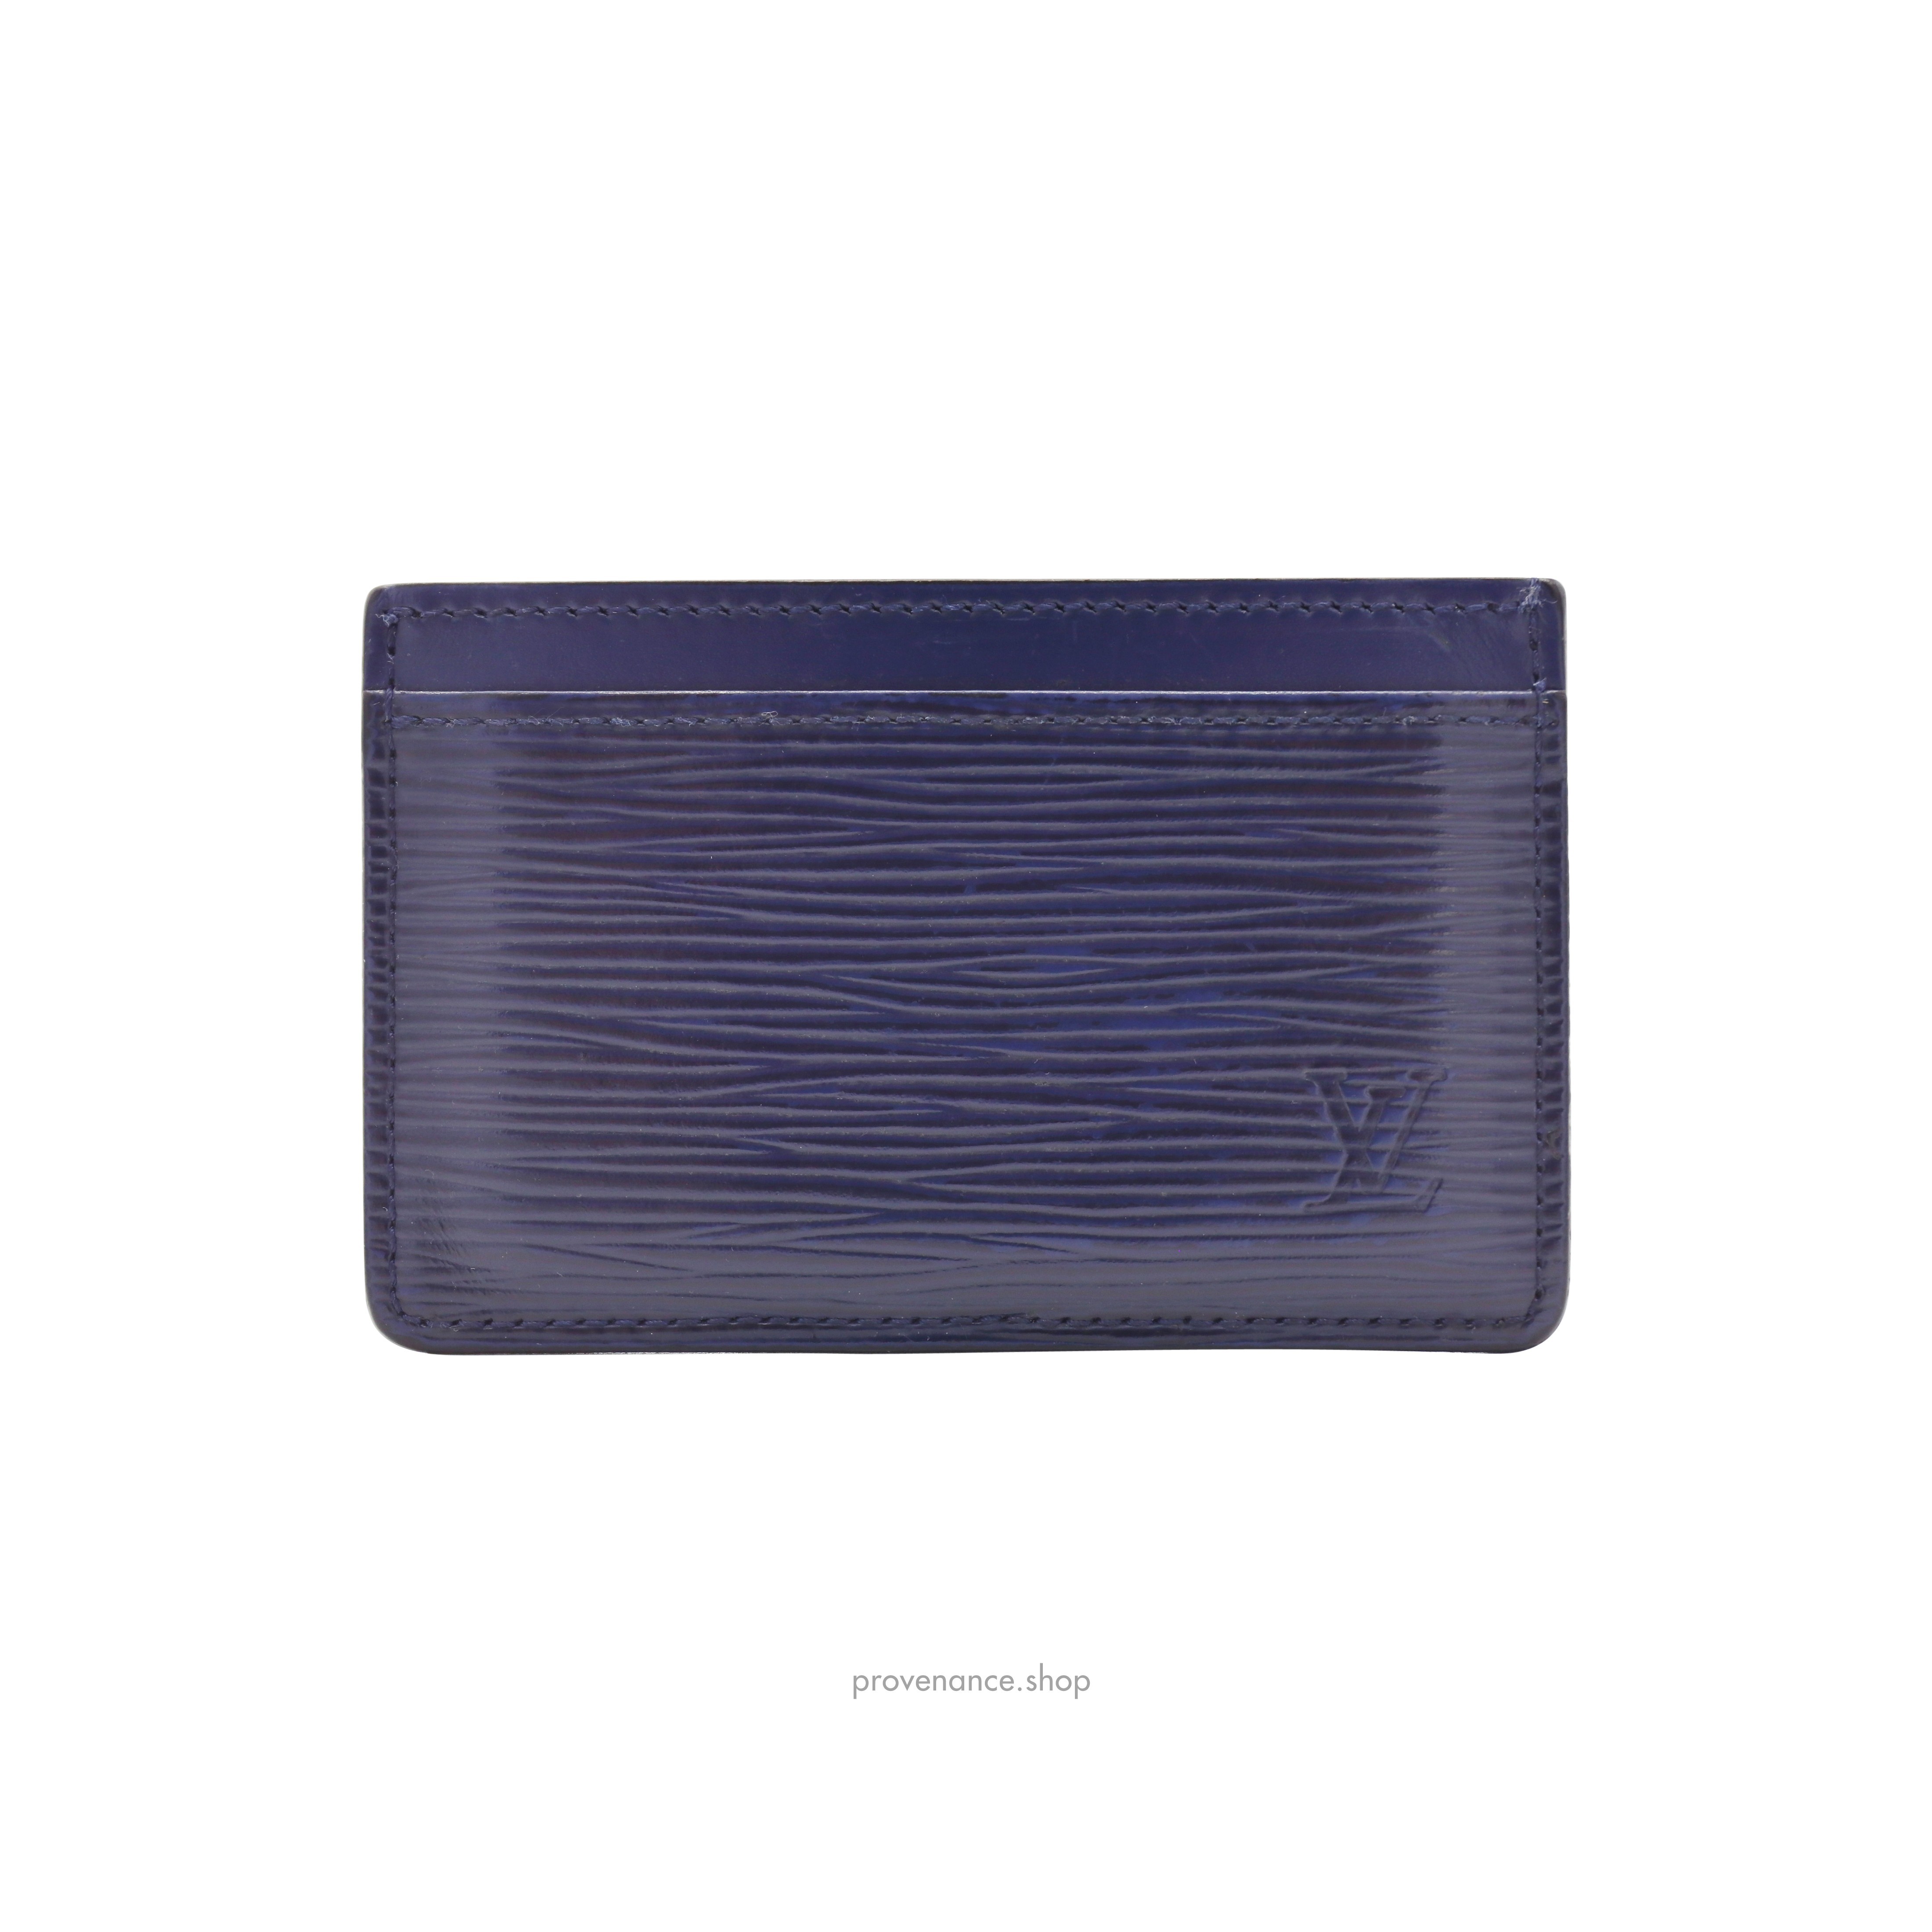 Card Holder Wallet - Navy Blue Epi Leather - 3